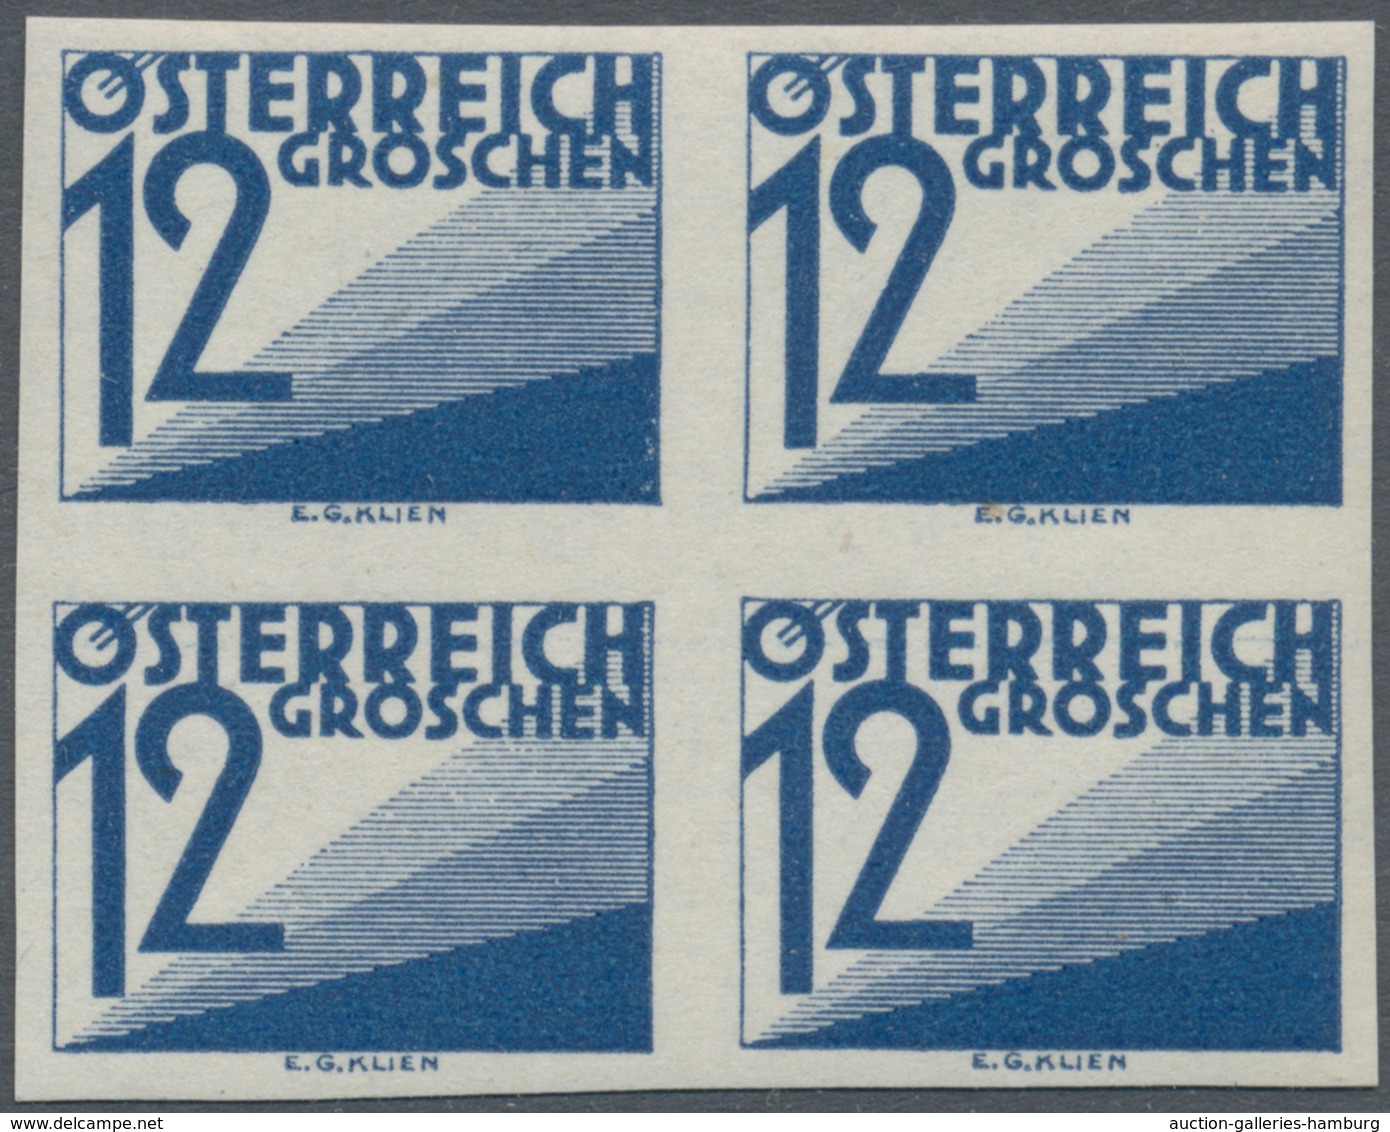 Österreich - Portomarken: 1925, Ziffern 1 Gr. bis 60 Gr., 13 Werte je in ungezähnten 4er-Blocks, pos